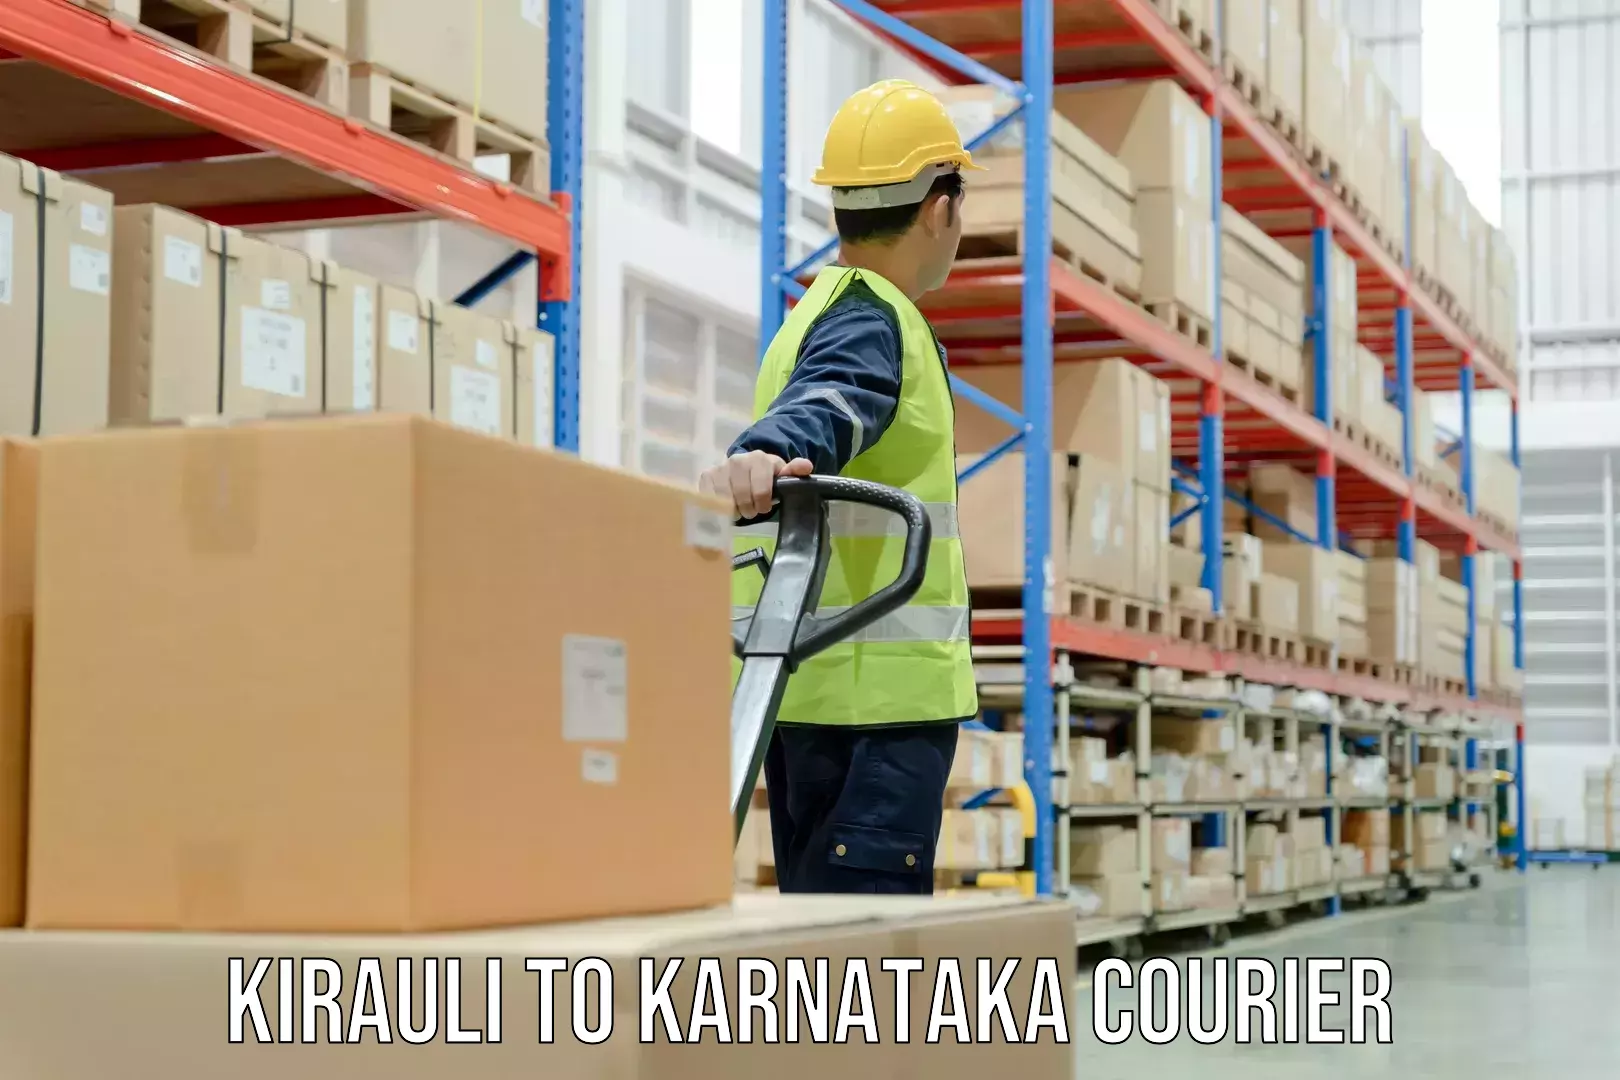 User-friendly delivery service Kirauli to Anavatti